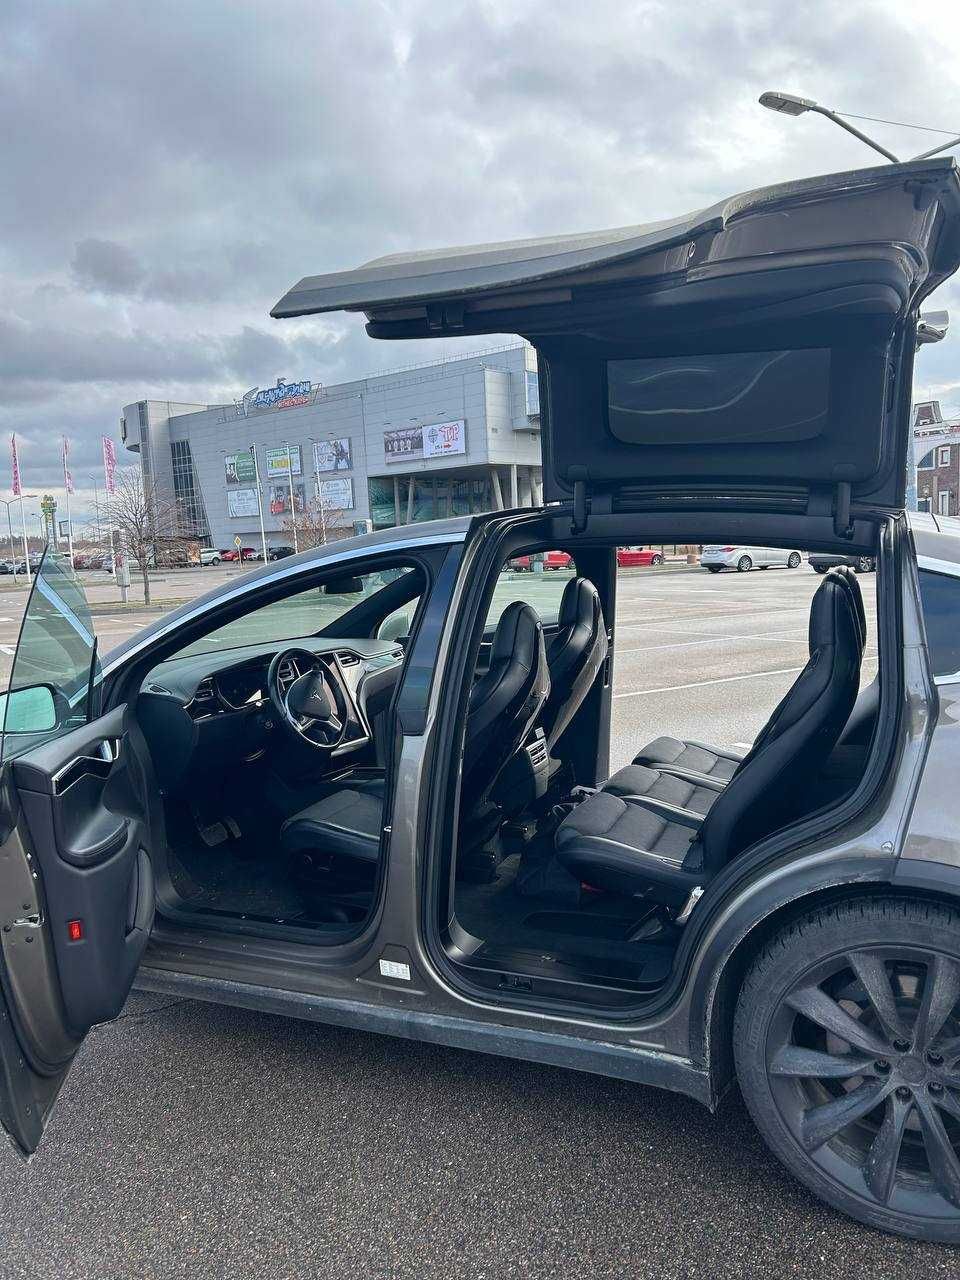 Tesla Model X 75D 2016